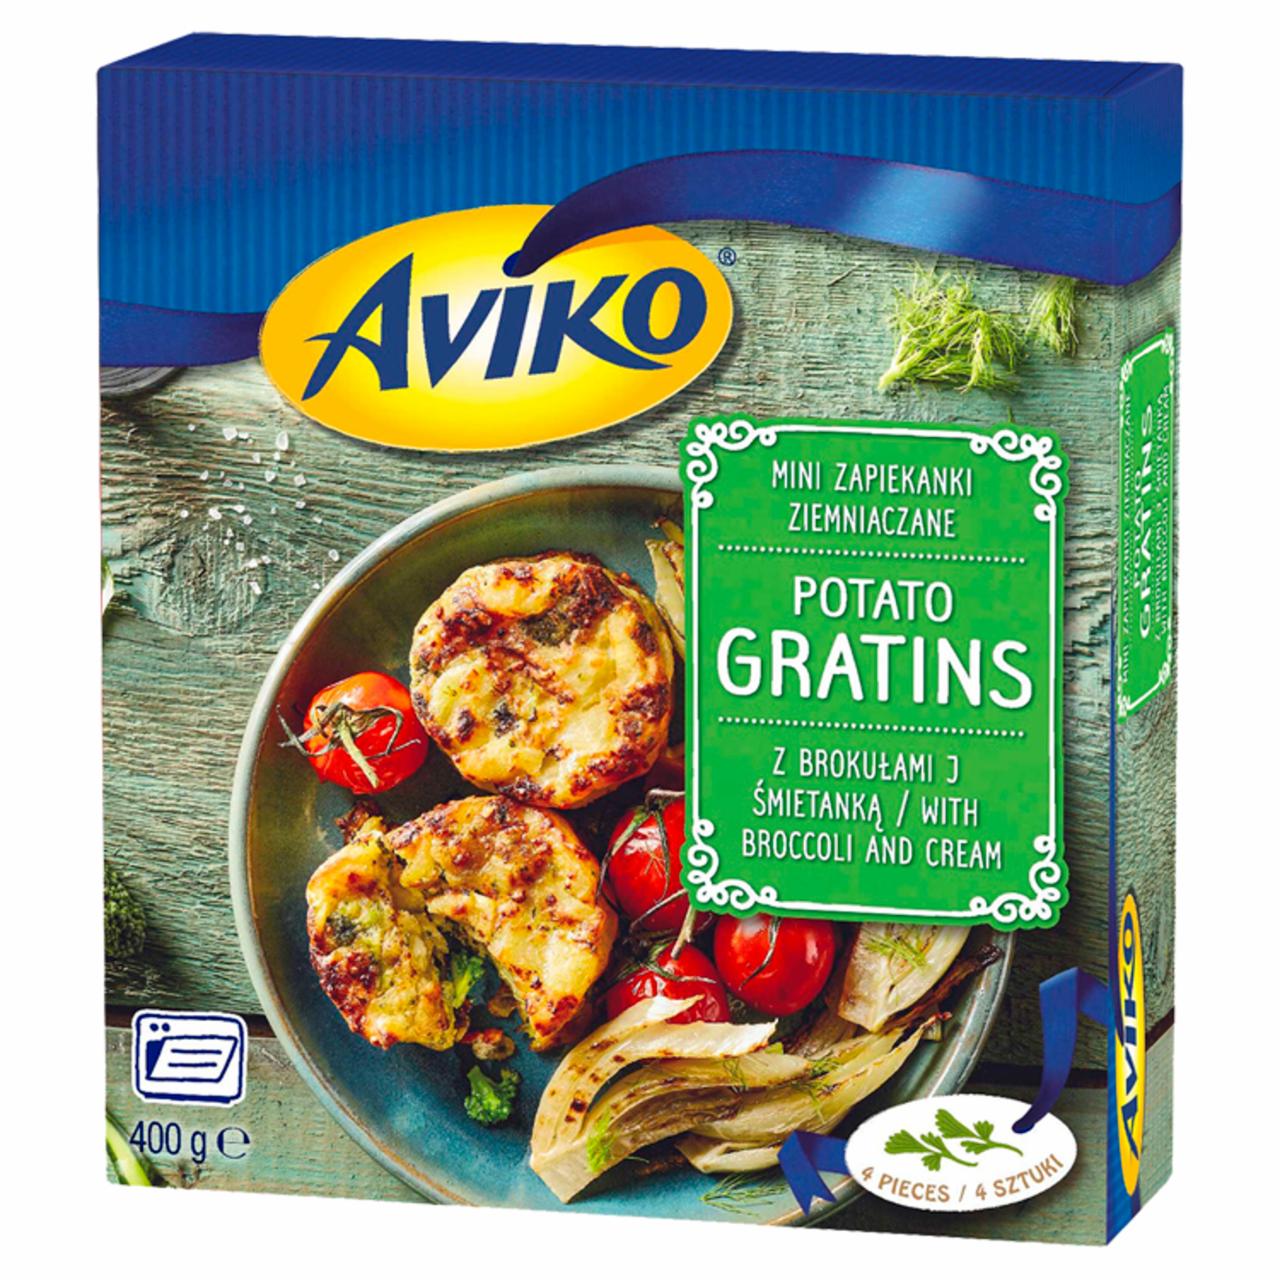 Zdjęcia - Aviko Mini zapiekanki ziemniaczane z brokułami i śmietanką 400 g (4 sztuki)